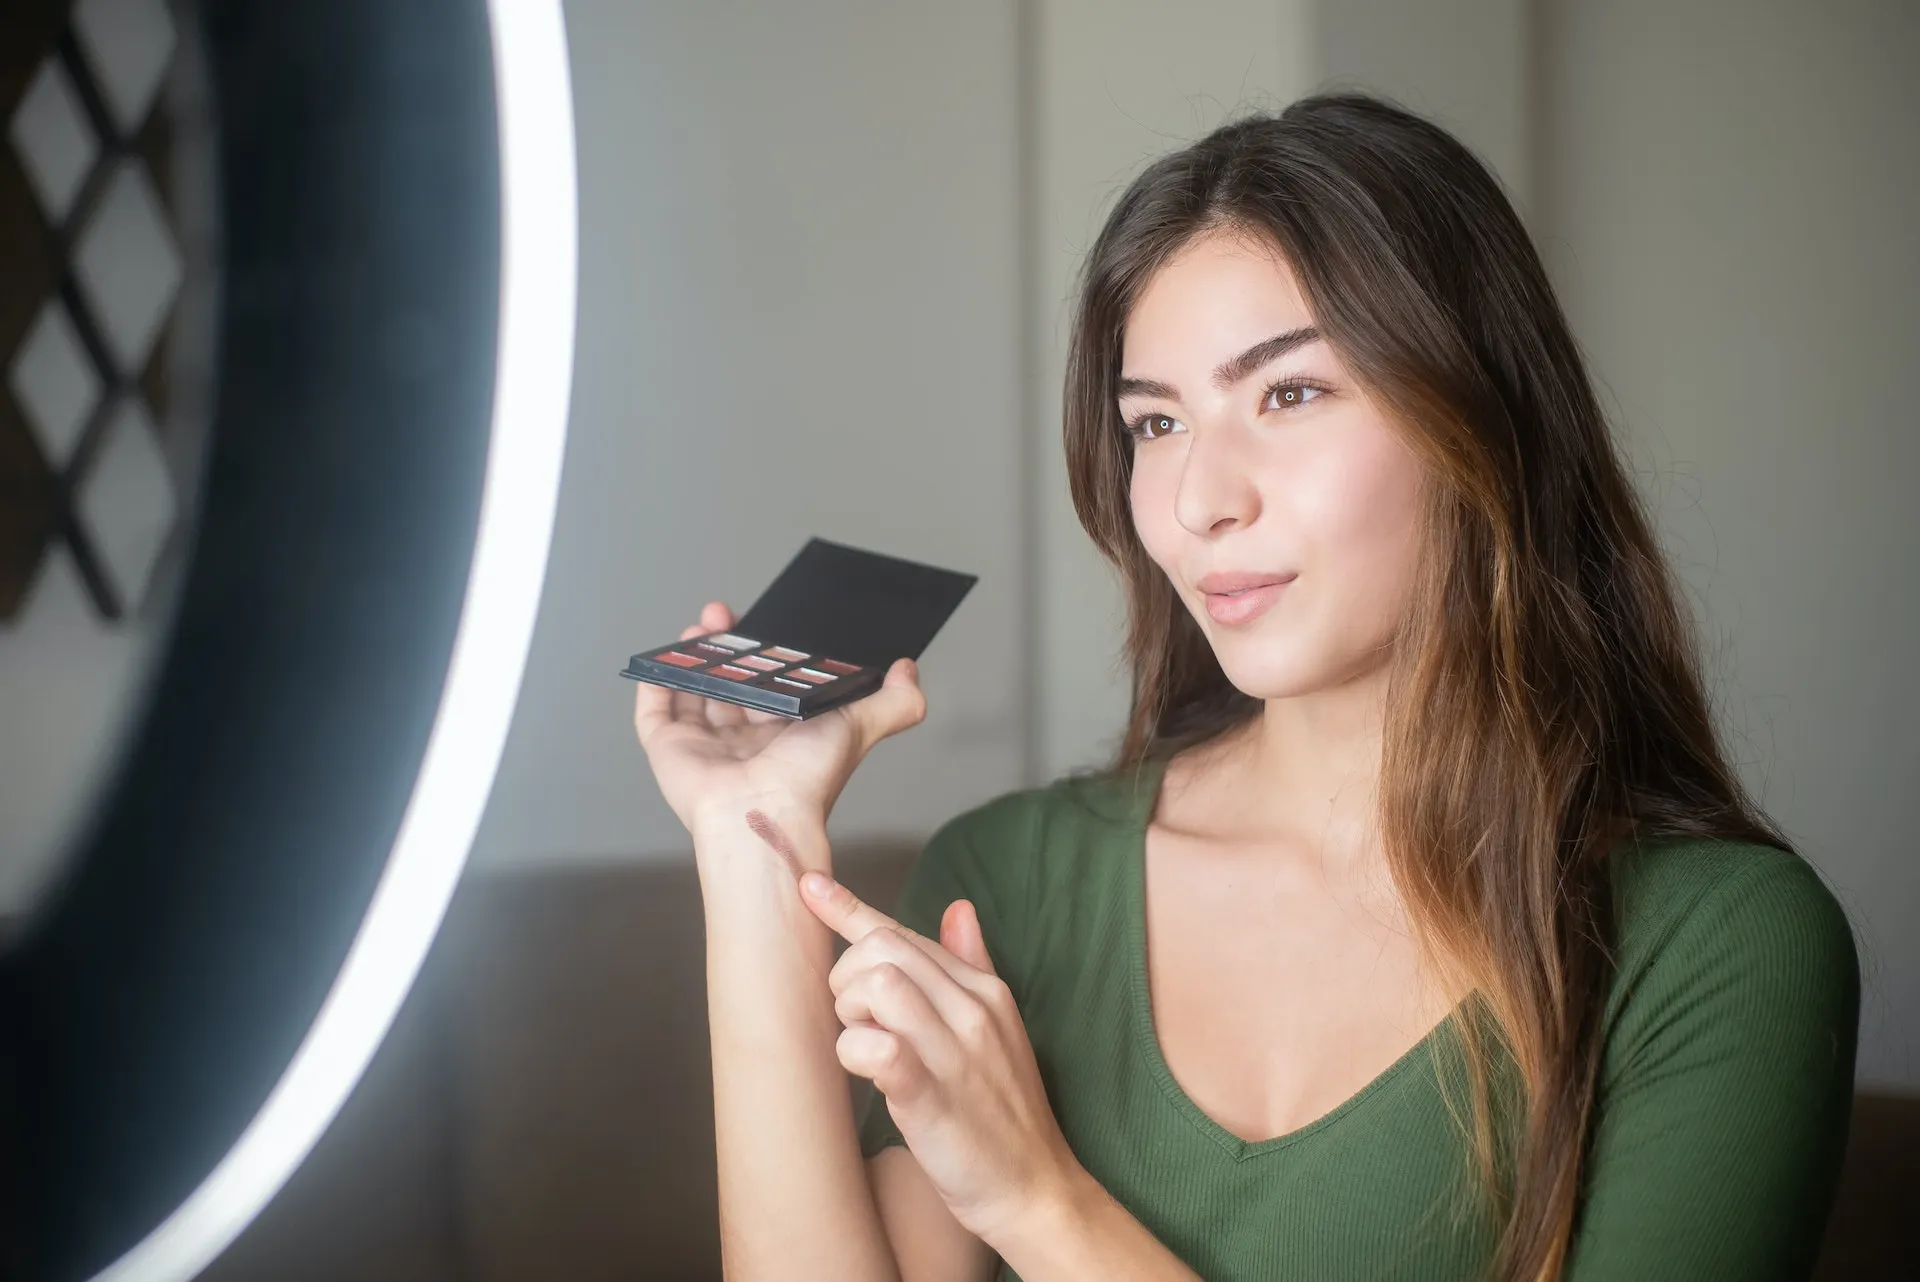 Using TikTok Live for a makeup tutorial